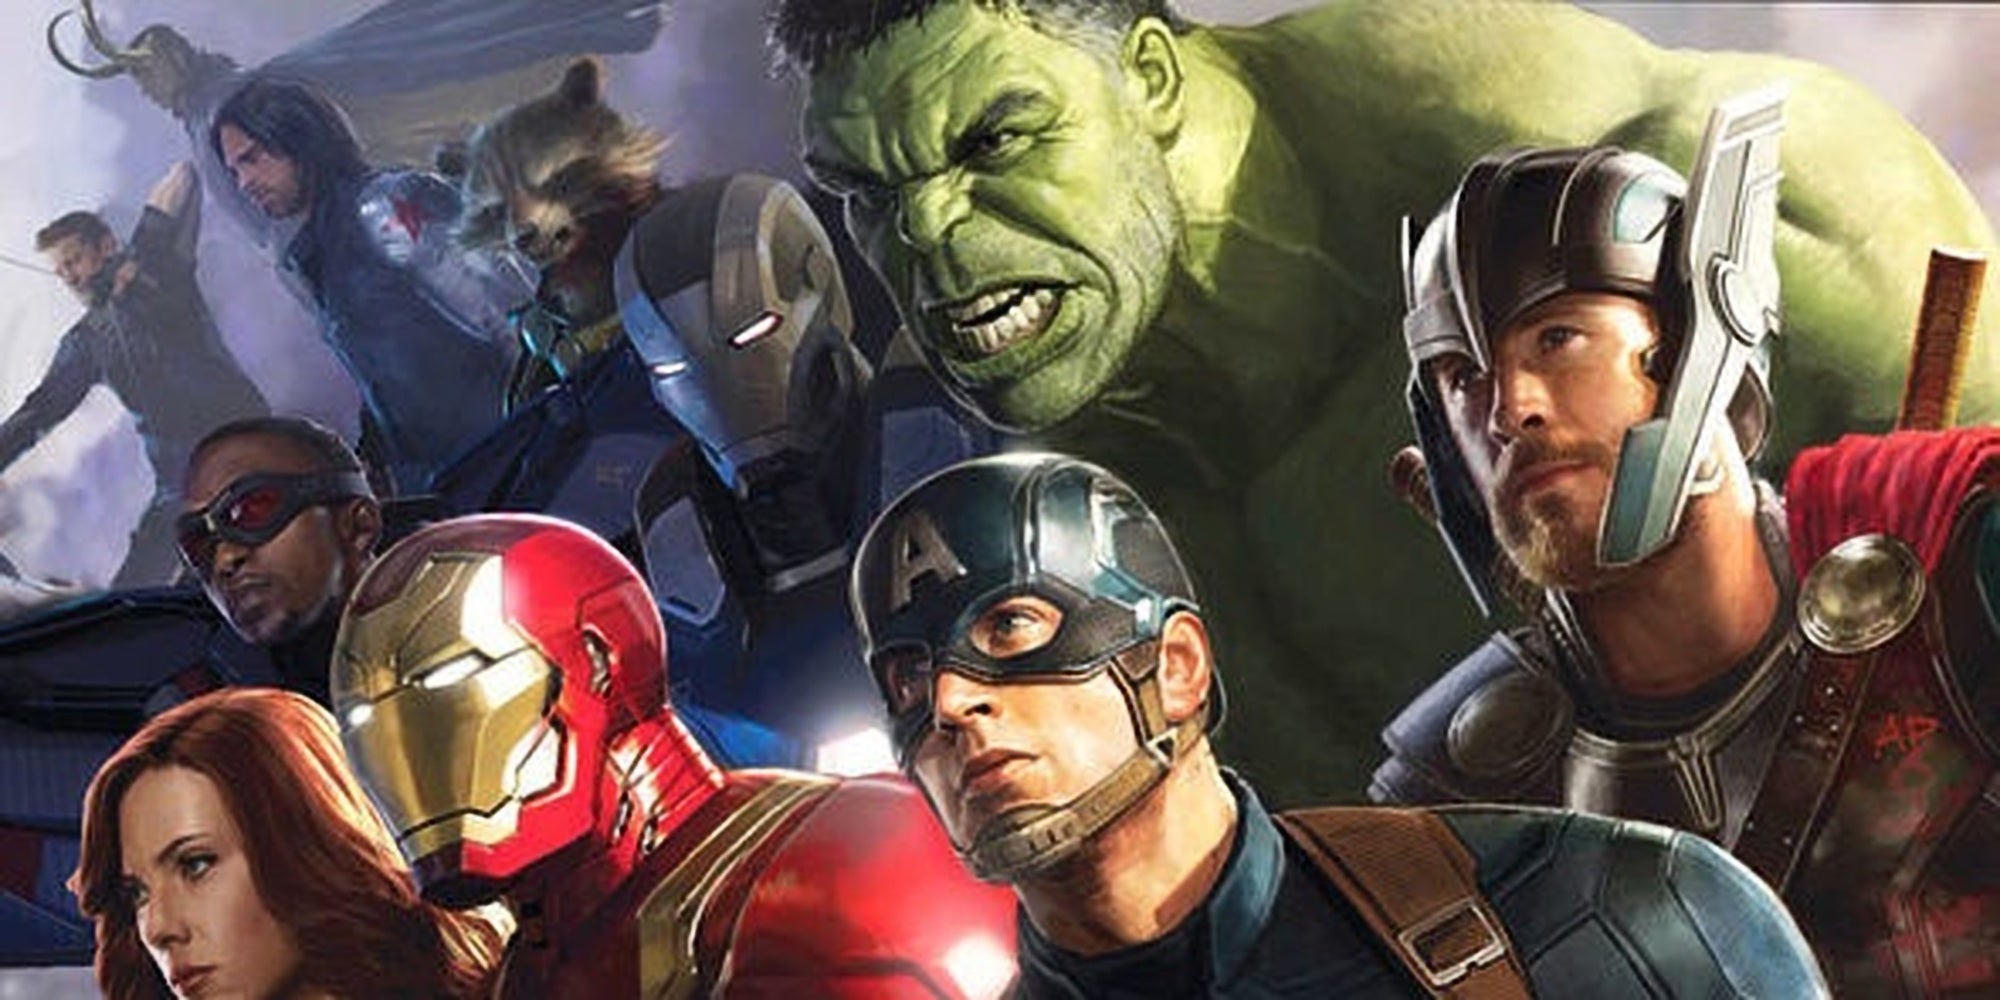 968px x 681px - Avengers 4 directors discuss chances of Deadpool and X-Men ...